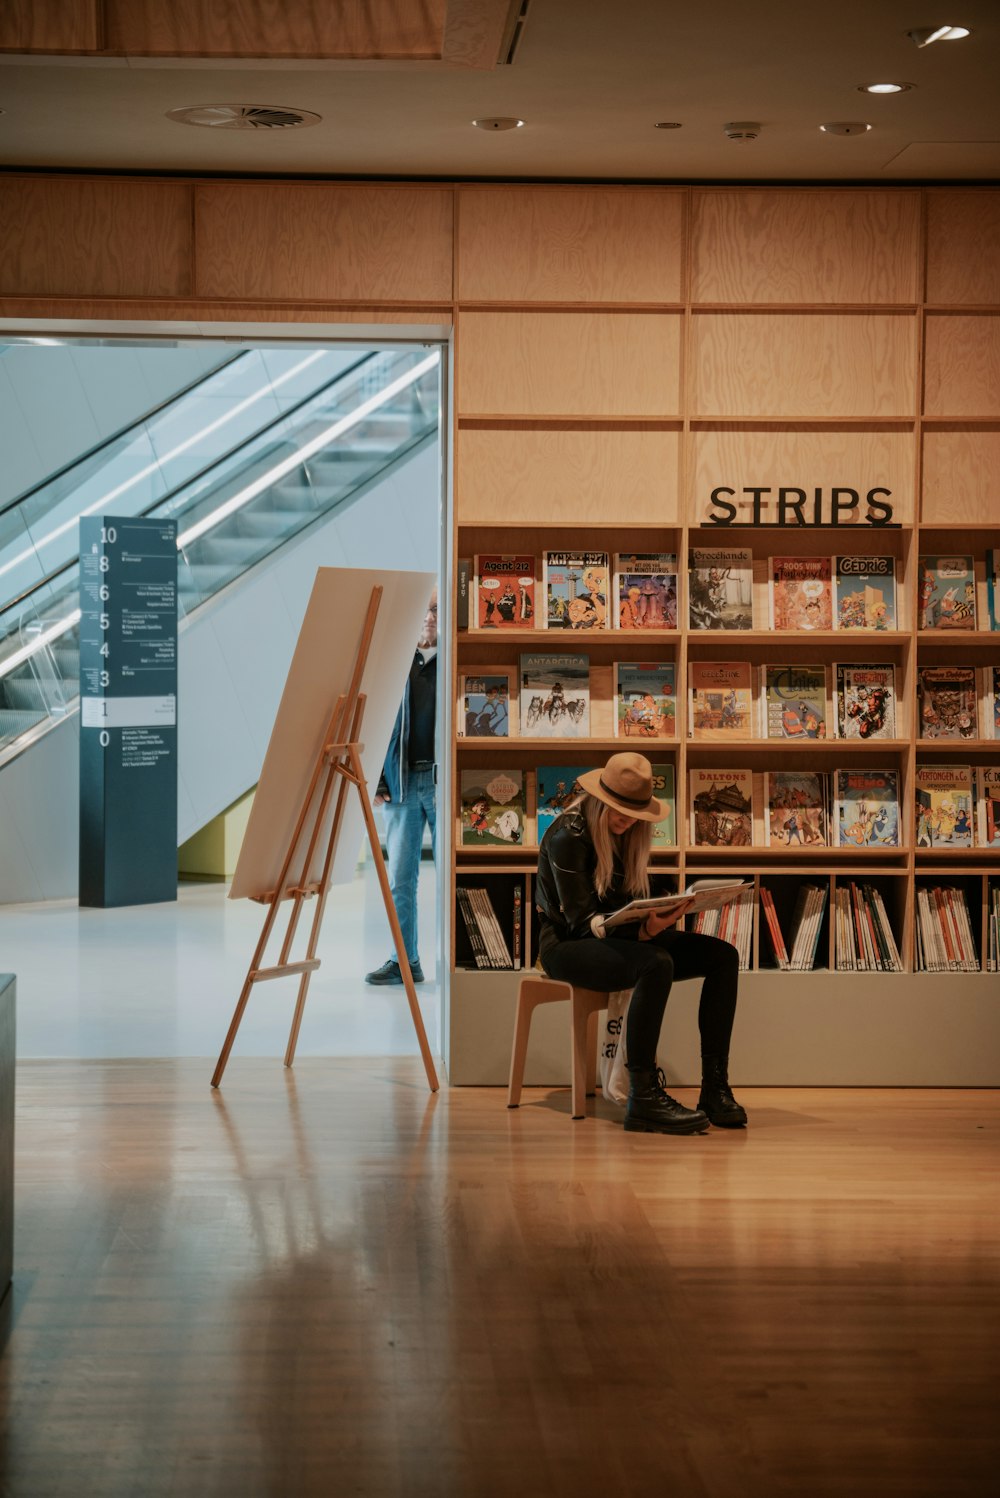 una persona sentada en una silla frente a una estantería de libros